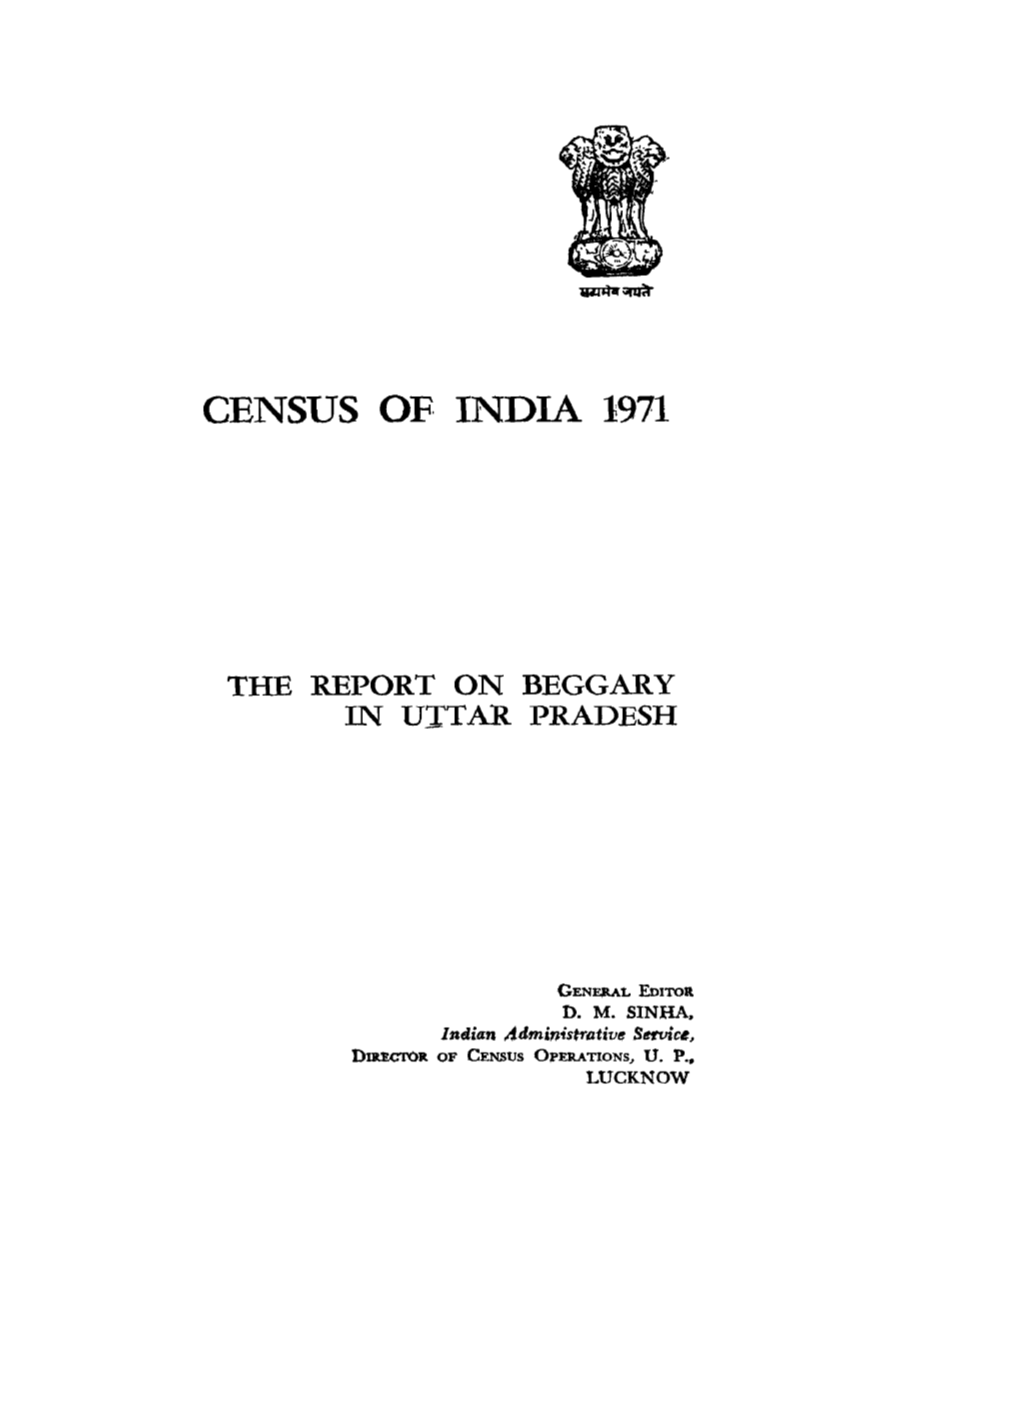 The Report on Beggary in Uttar Pradesh